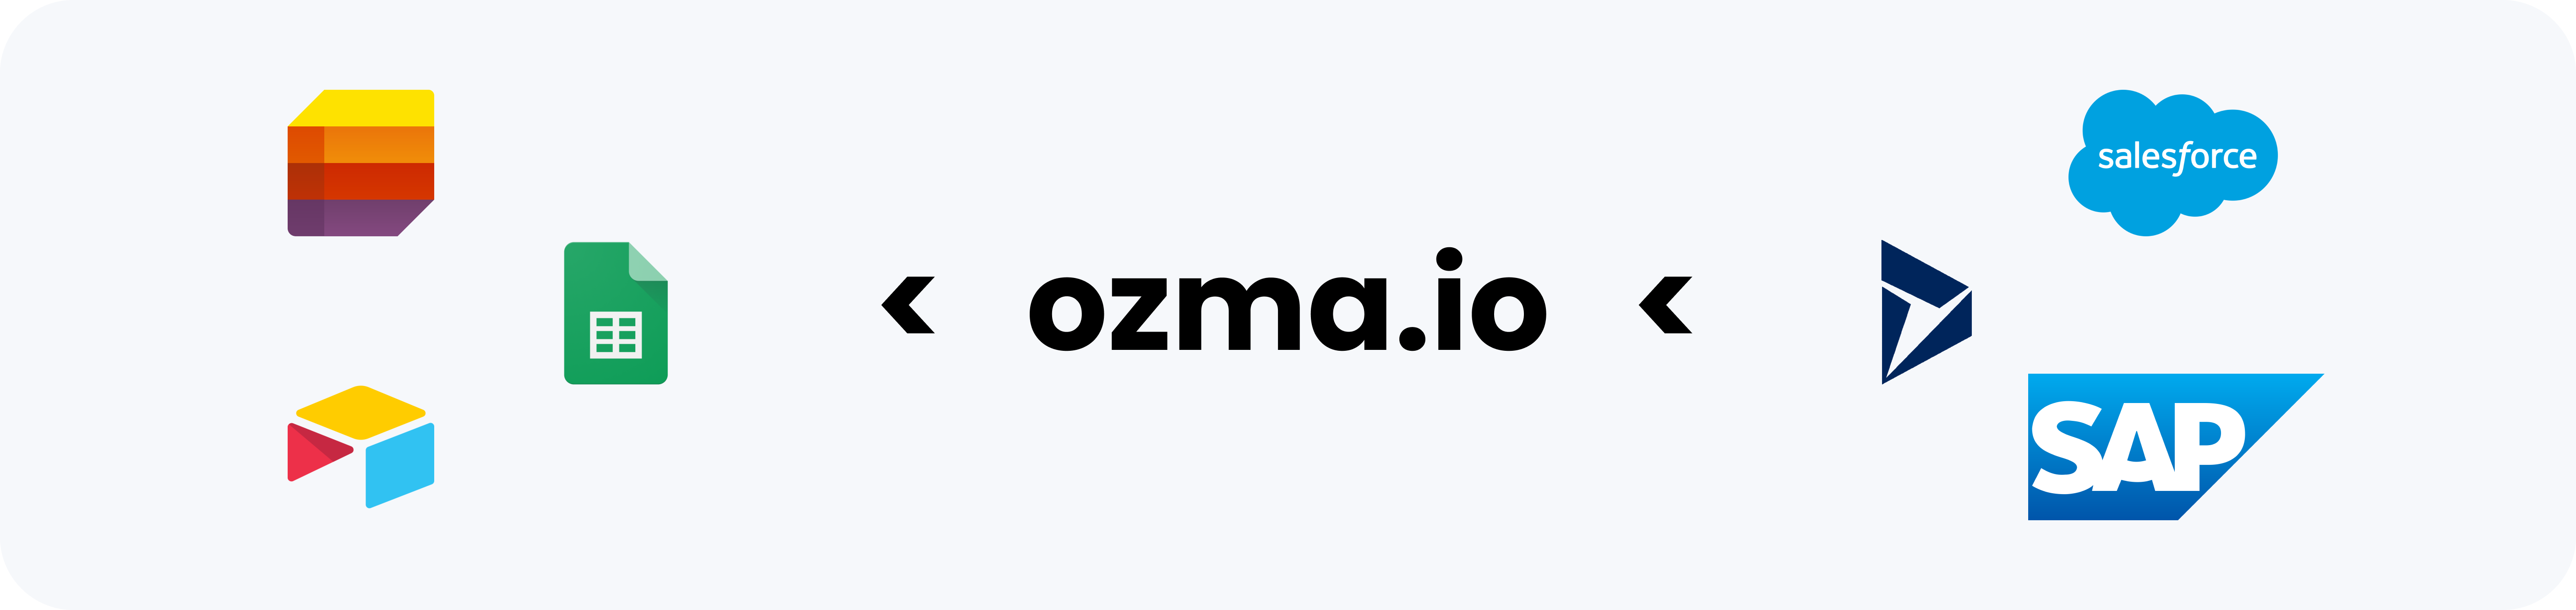 ozma.io kind enterprise